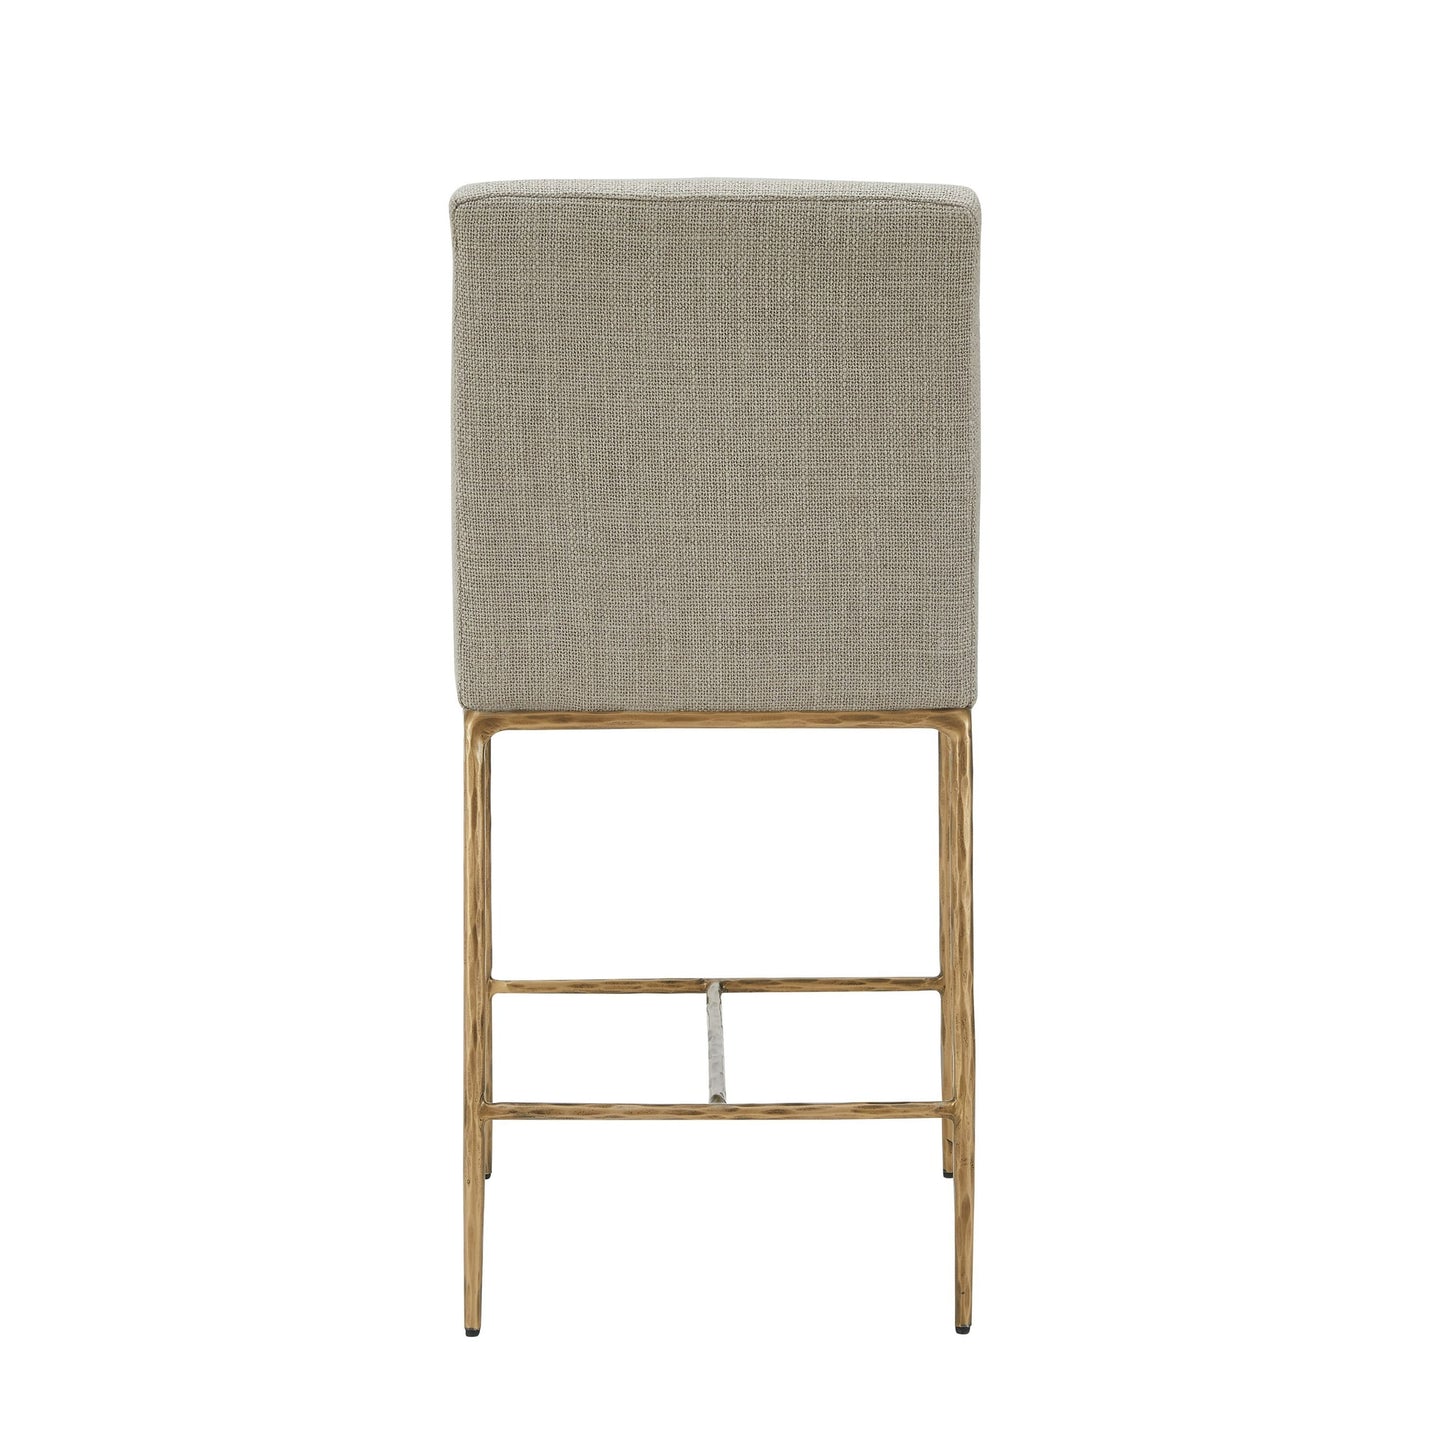 Modrest Beasley - Modern Beige Linen + Brass Counter Chair